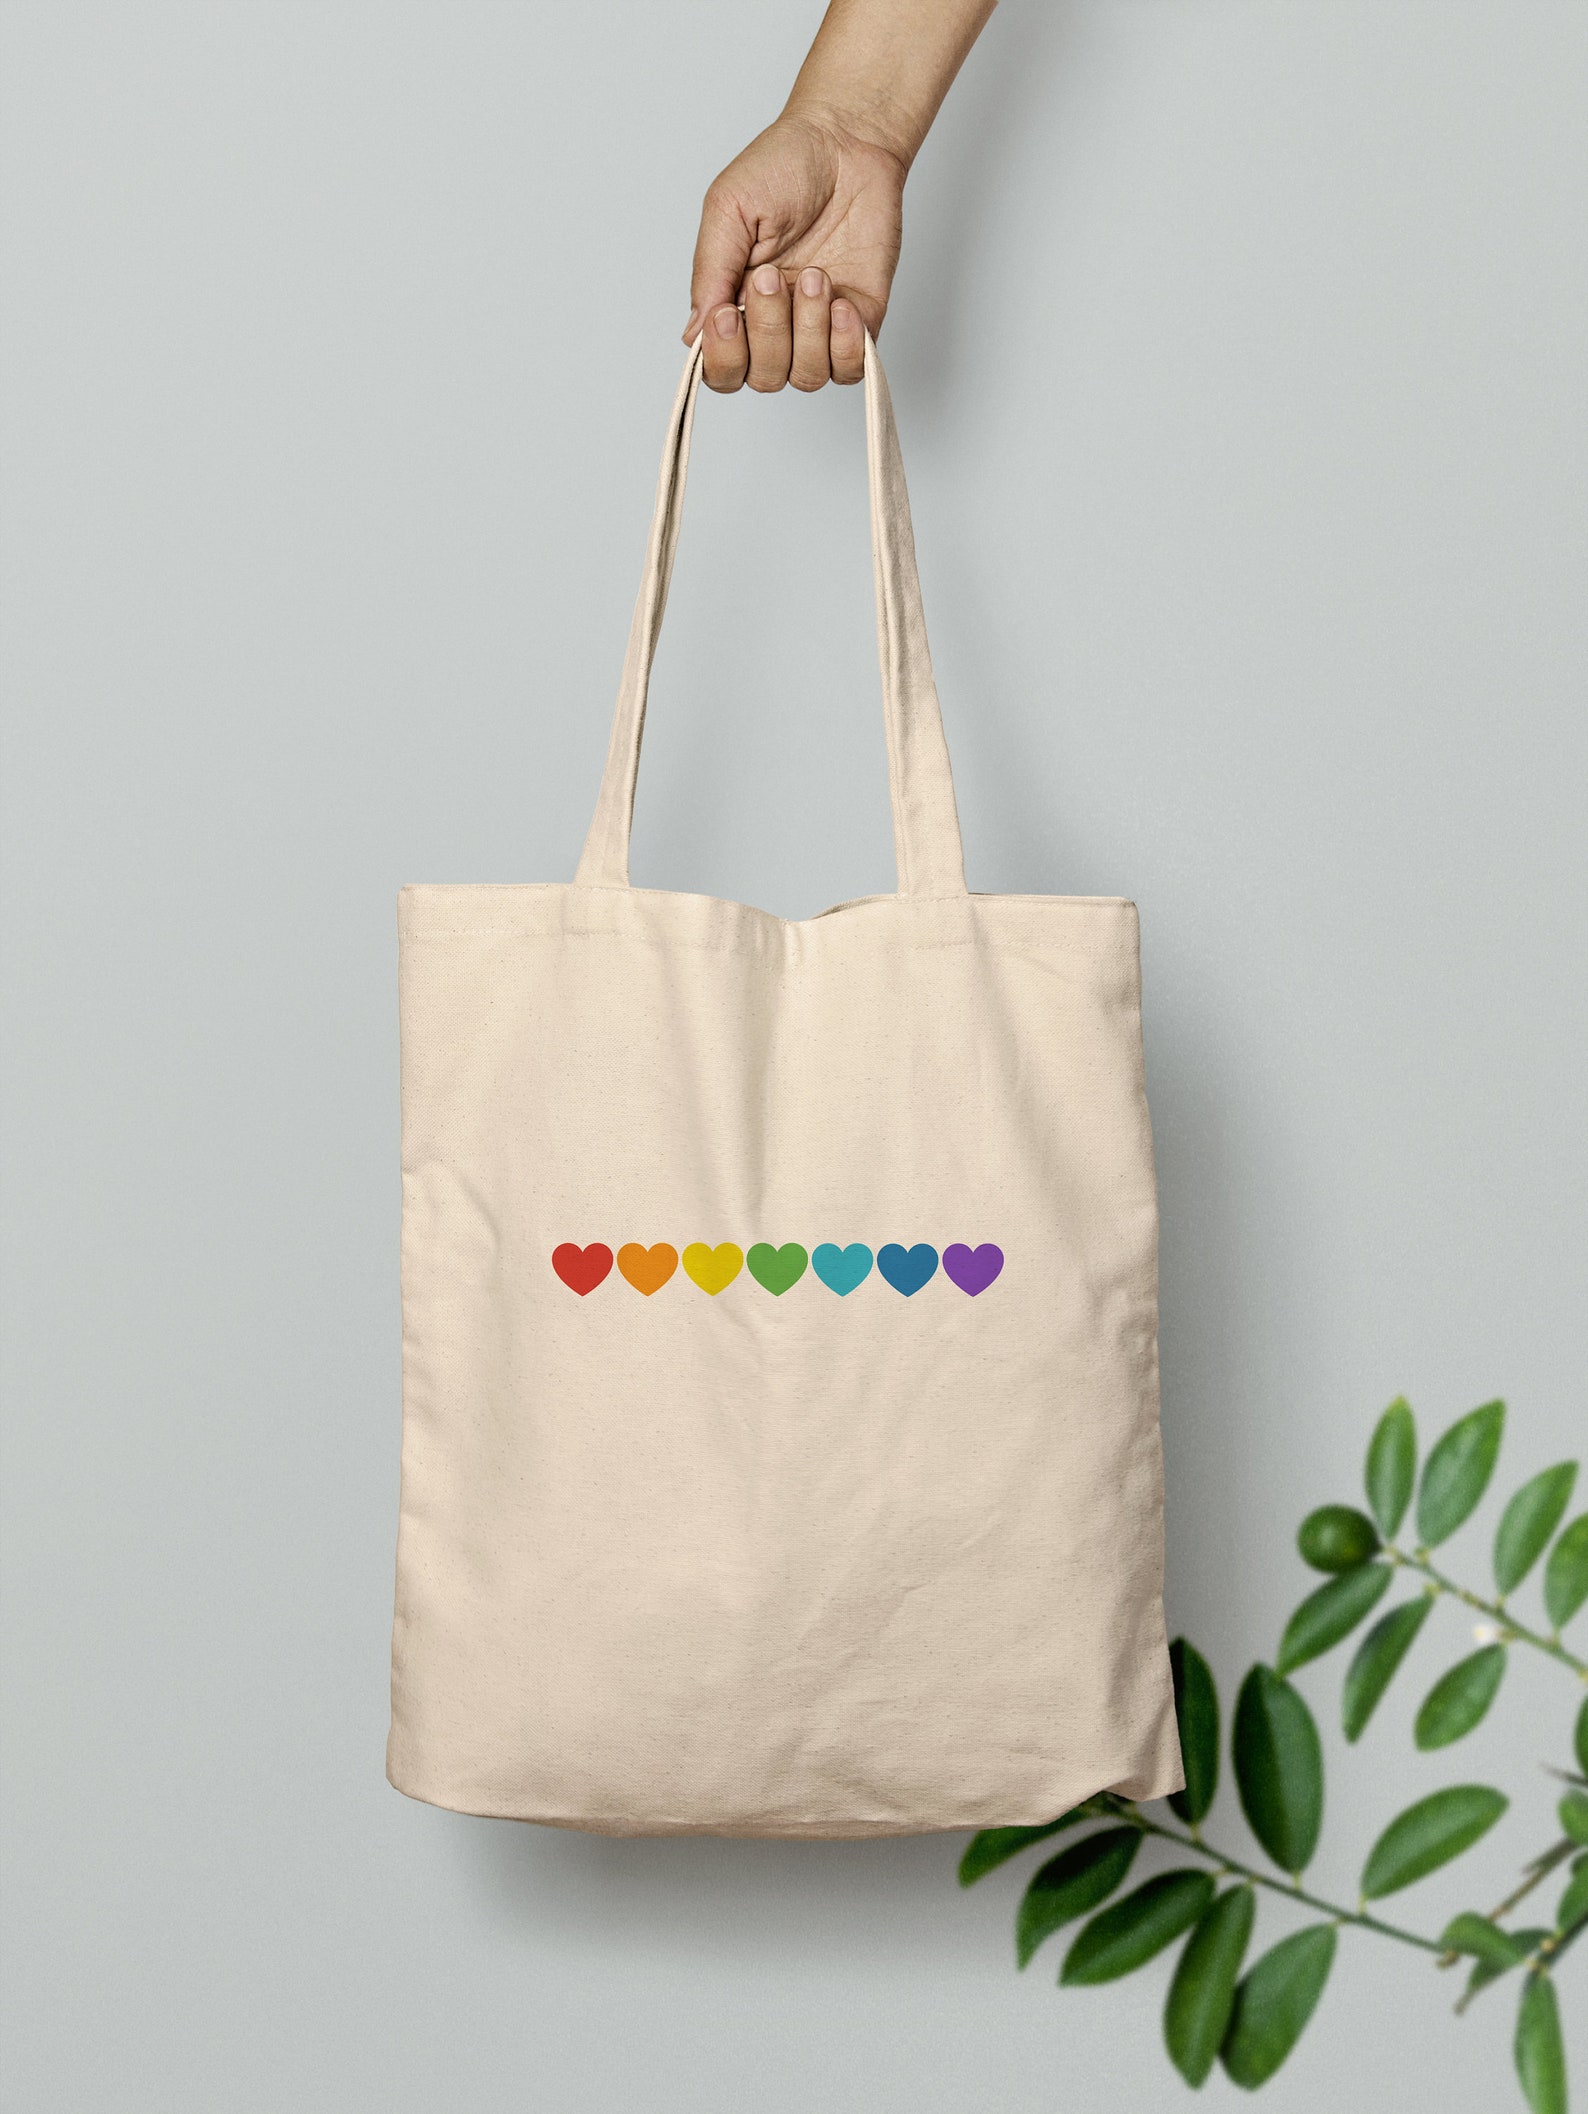 Rainbow Hearts Tote Bag LGBTQ Tote Bag Gay Pride Tote Bag | Etsy